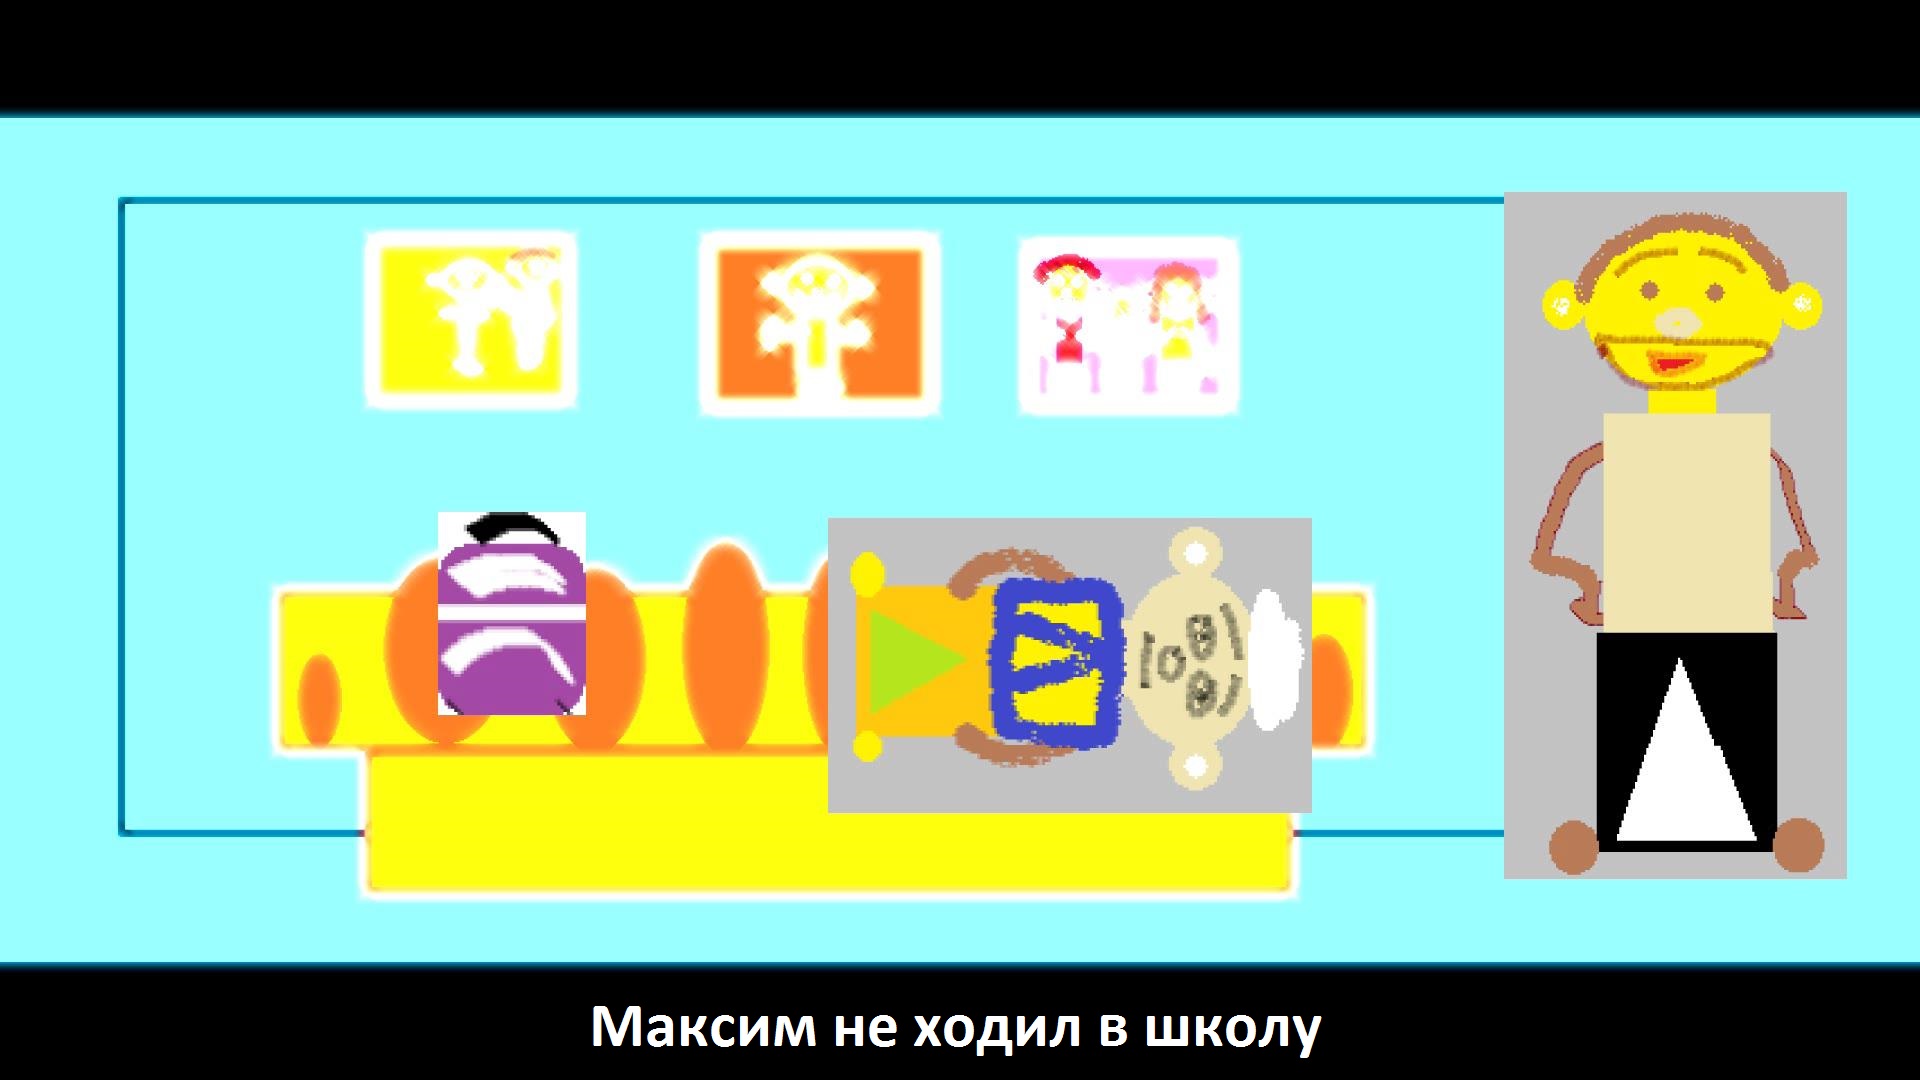 Анимация "Максим не ходил в школу" (пятый мультфильм)